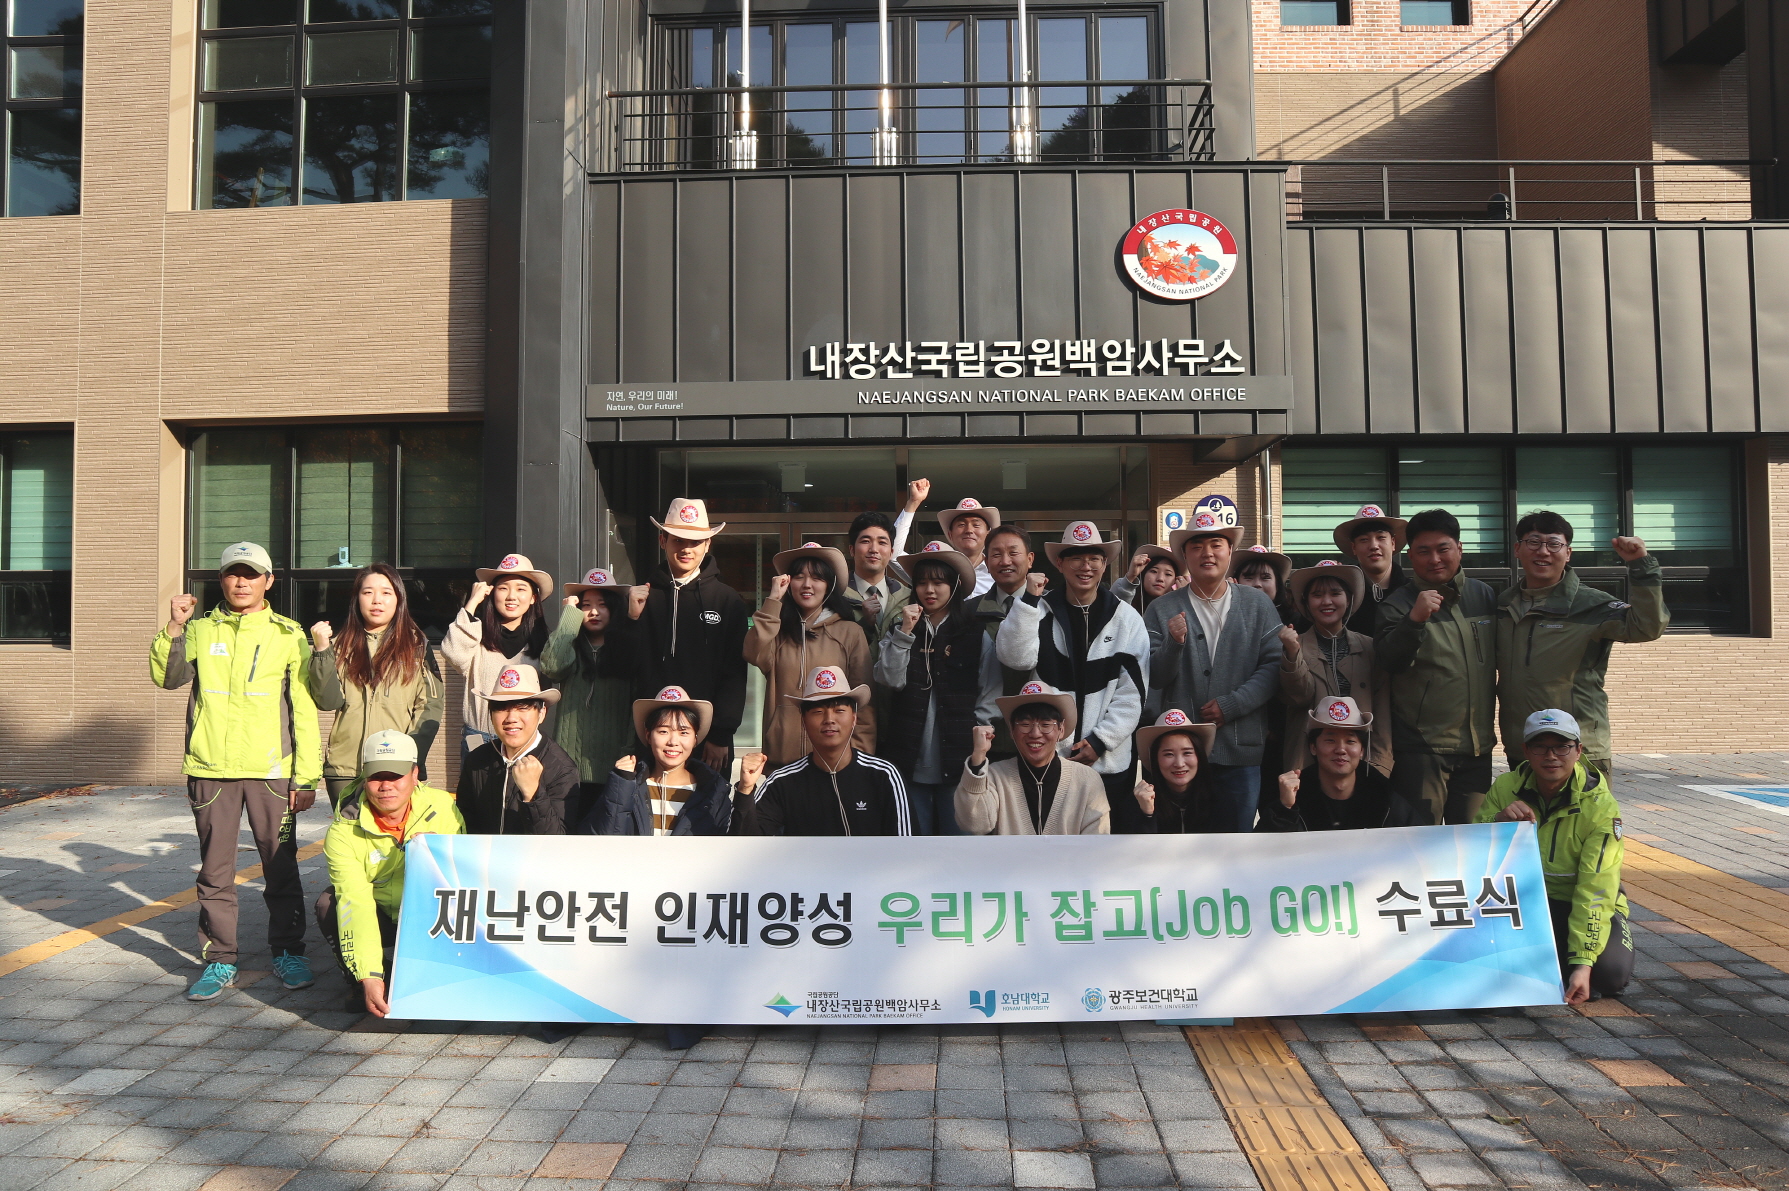 내장산국립공원백암사무소,‘재난안전 인재 양성 우리가 잡고(Job Go!)’수료식 개최